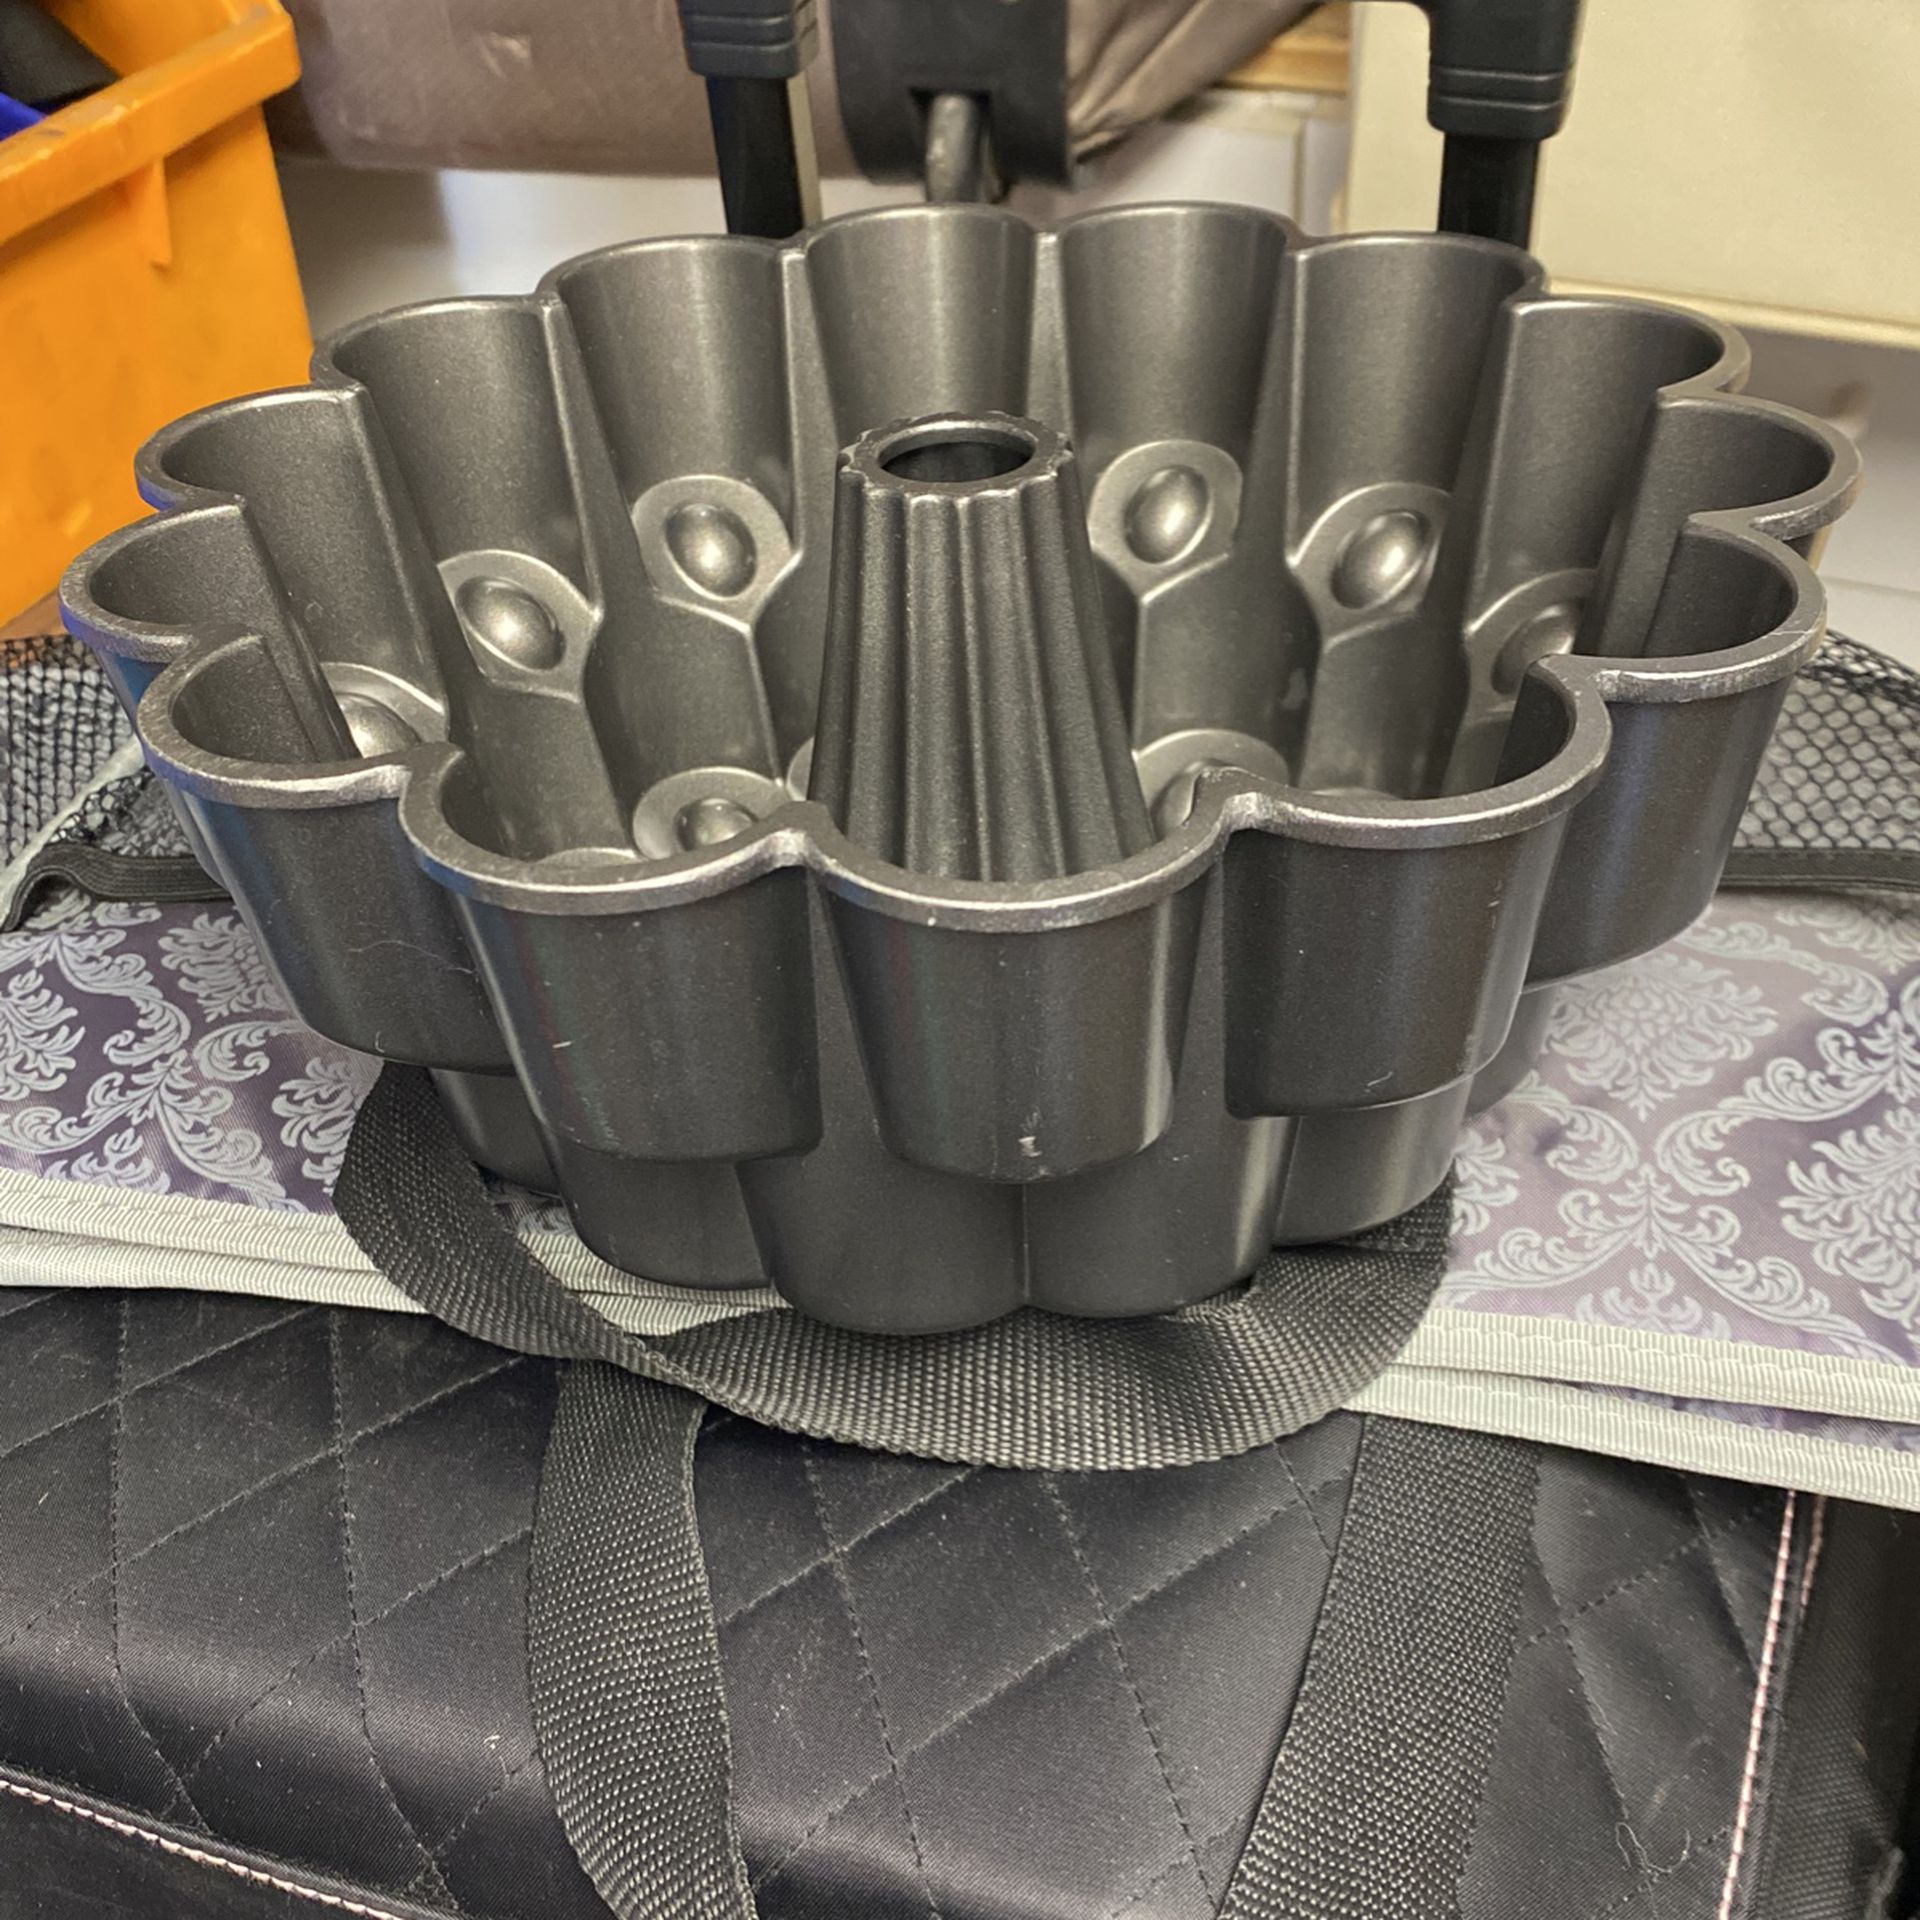 Wilton Dimensions Marquise Bundt Pan Heavy Duty Cast Aluminum Cake Form  NonStick